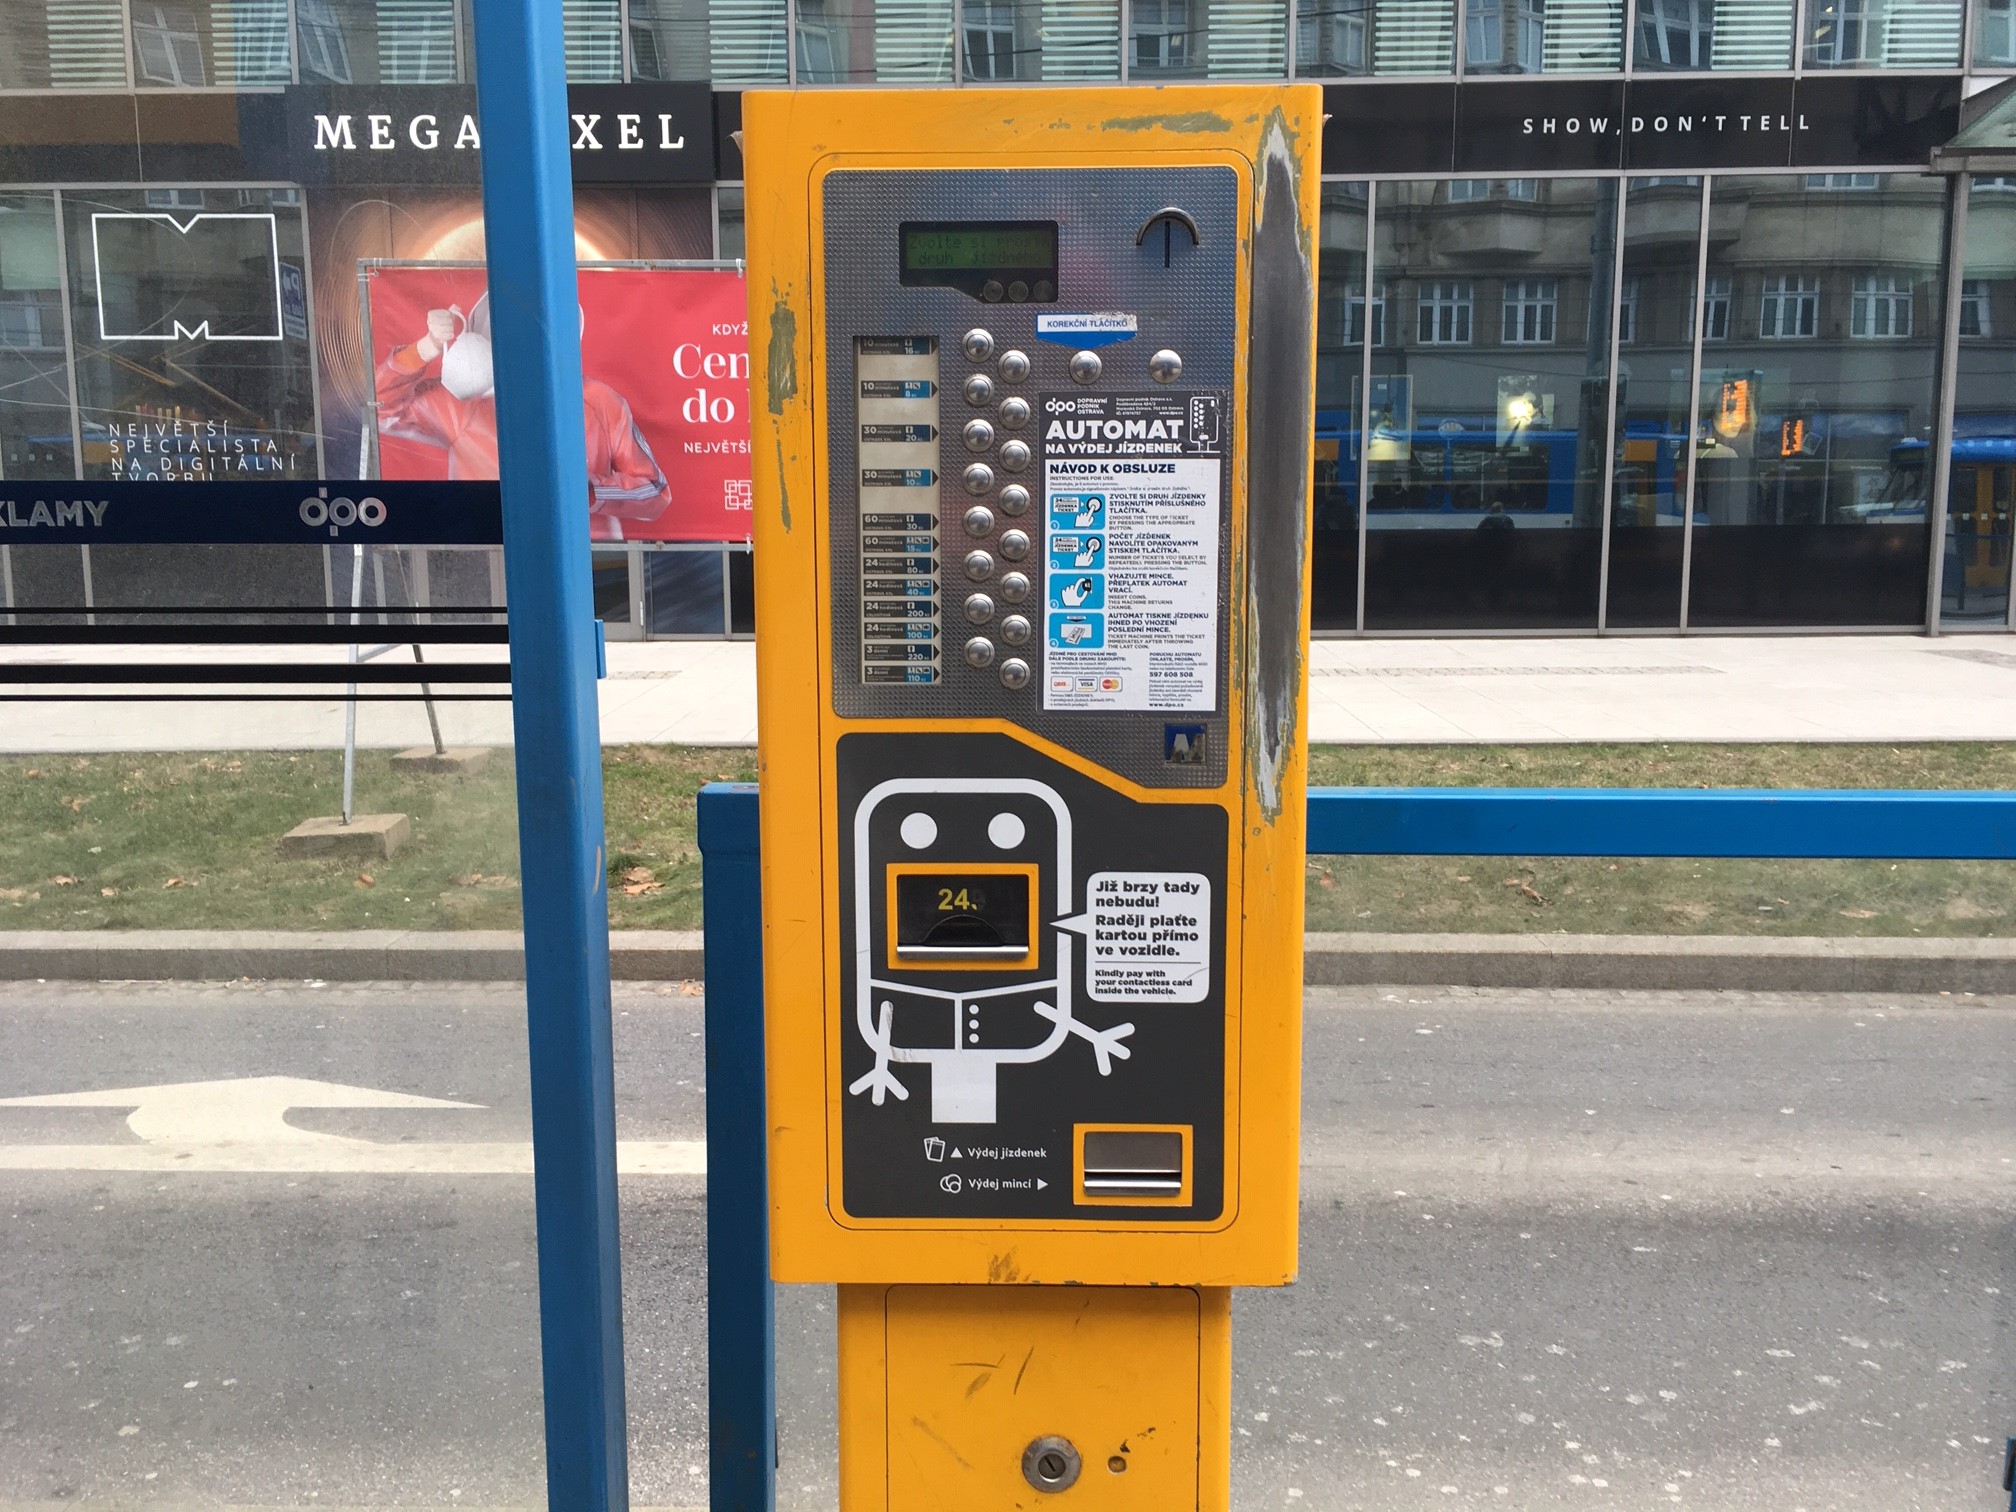 Už brzy tady nebudu, varují cestující v Ostravě nápisy na prodejních automatech na jízdenky.